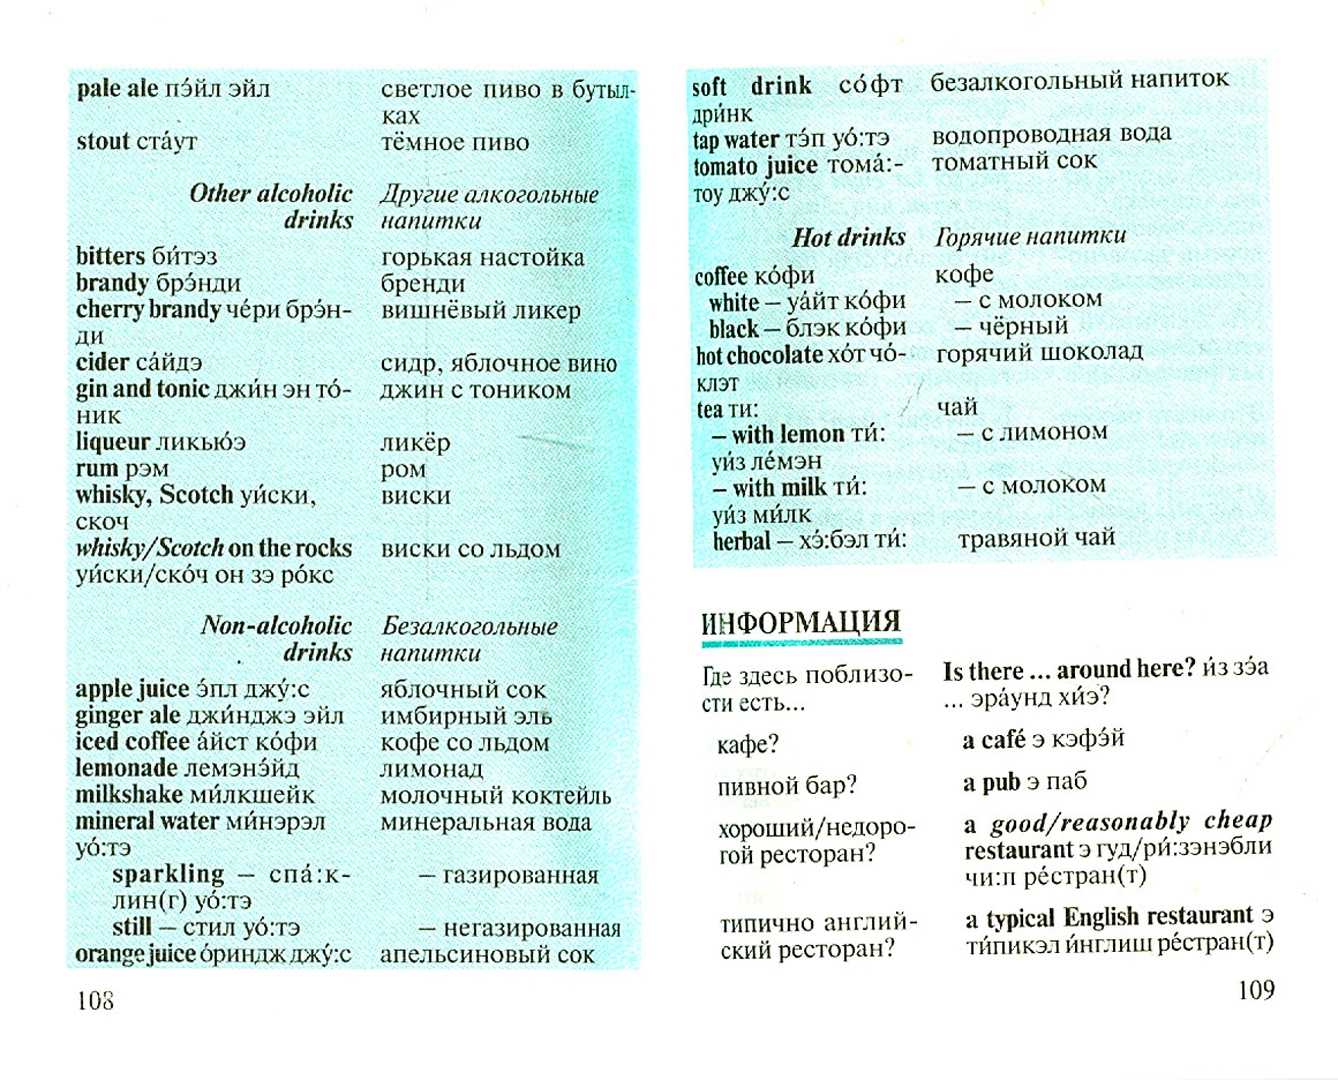 Болгарский язык